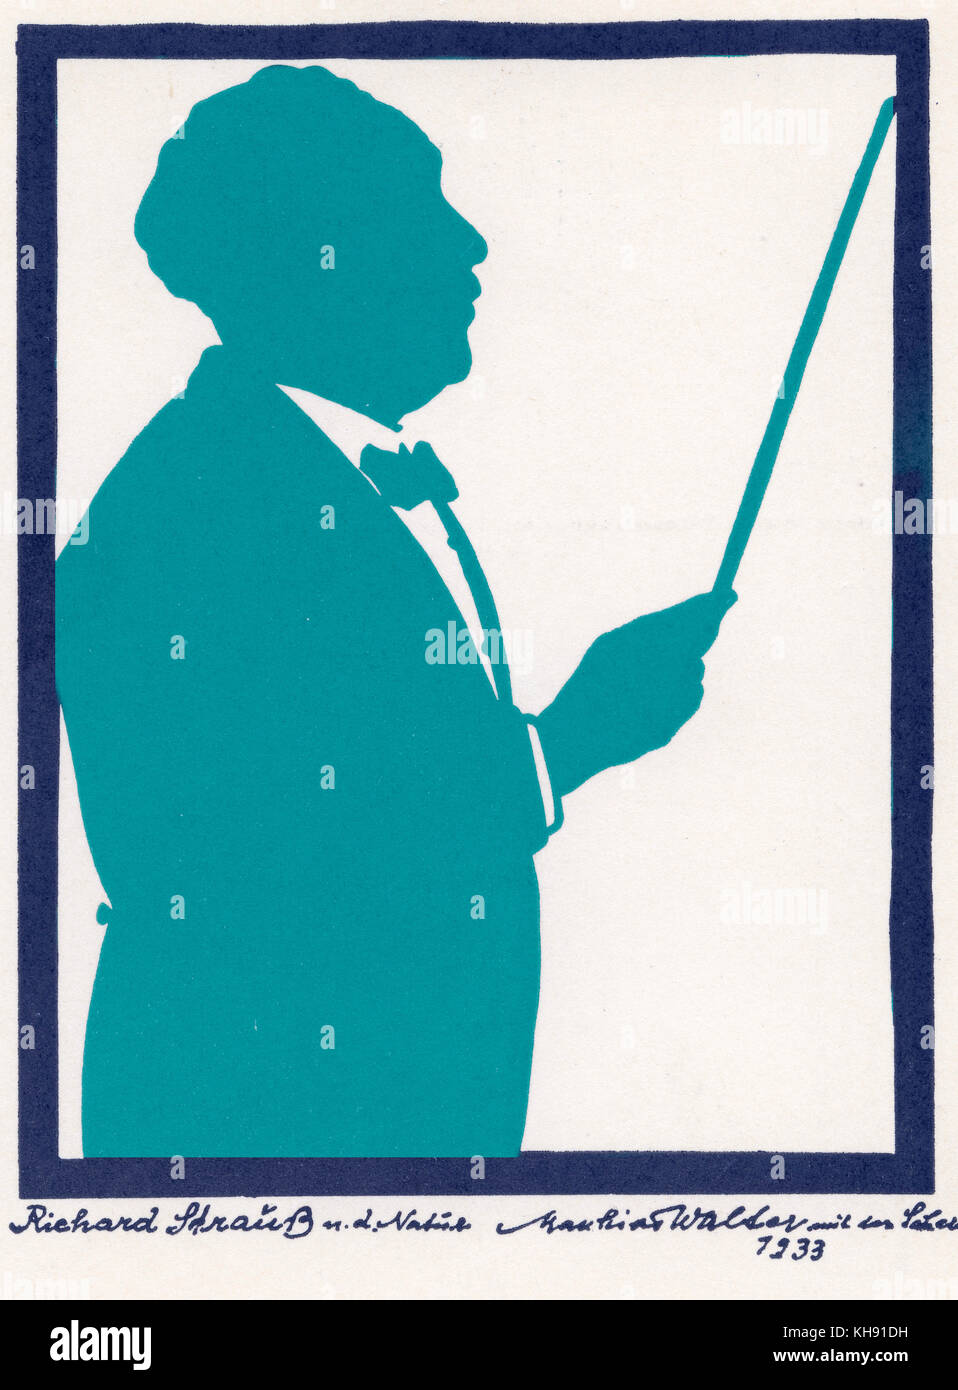 Richard Strauss - silhouette da Matthias Walter, 1933. Compositore tedesco & conduttore, 1864-1949. Foto Stock